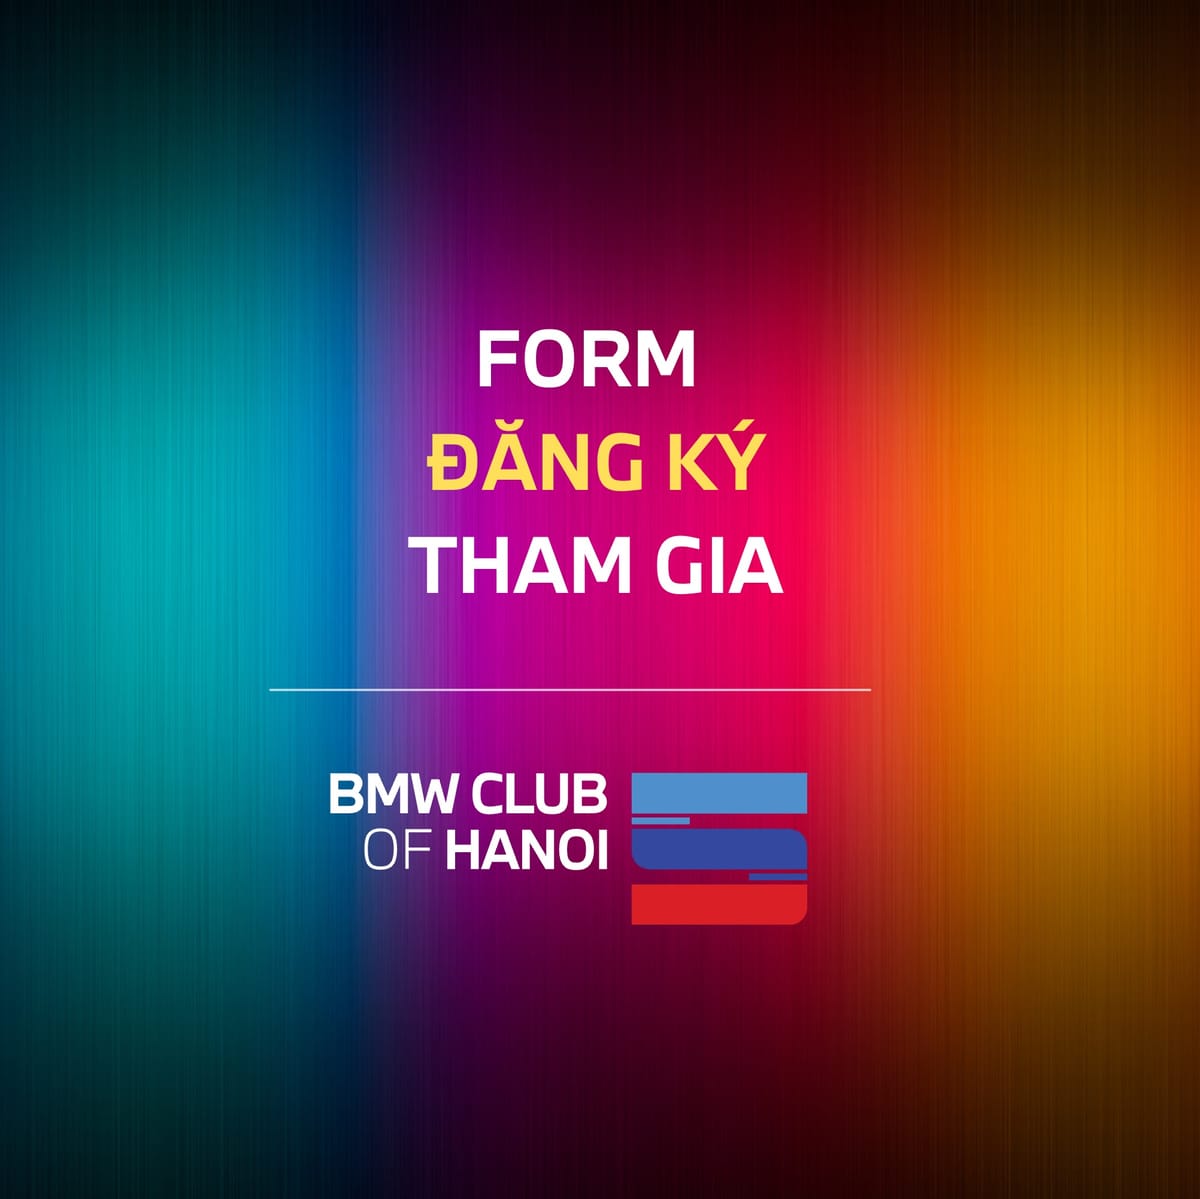 Form đăng kí tham gia chương trình "5 năm thành lập BMW Club of Hanoi"